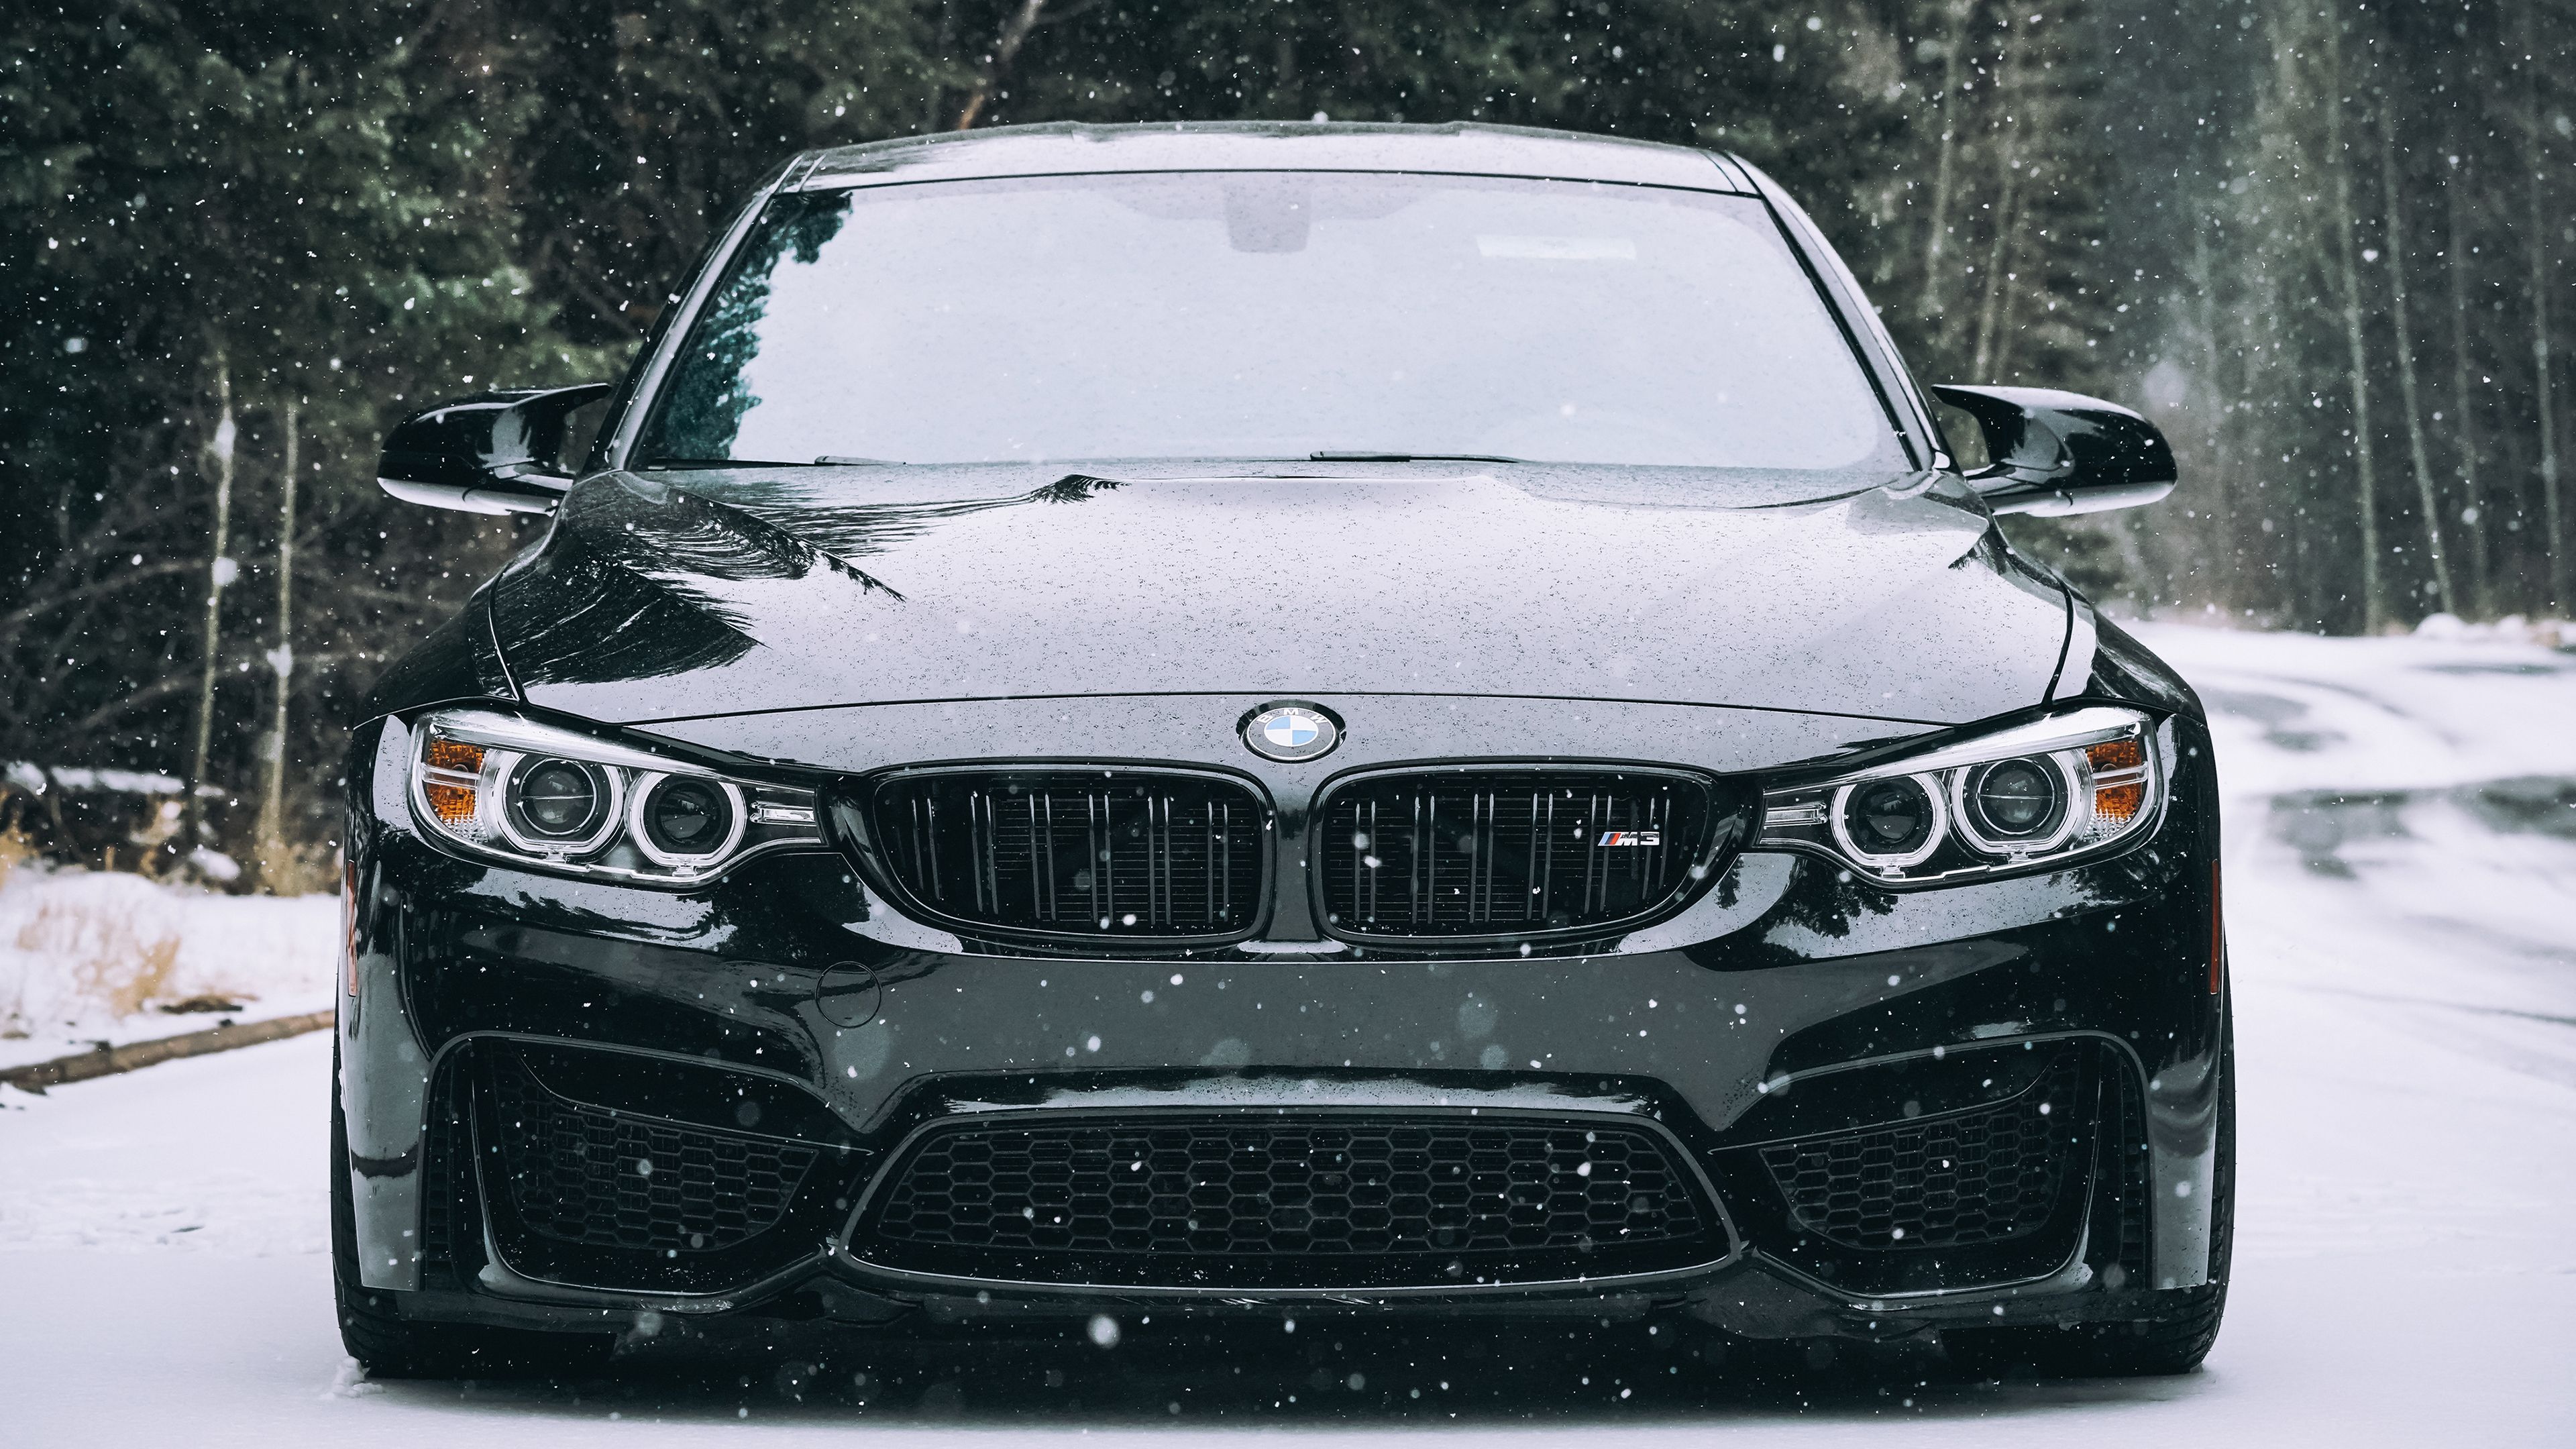  BMW HD Hintergrundbild 3840x2160. Kostenlose Hintergrundbilder Graustufenfoto Von Bmw Auto, Bilder Für Ihren Desktop Und Fotos